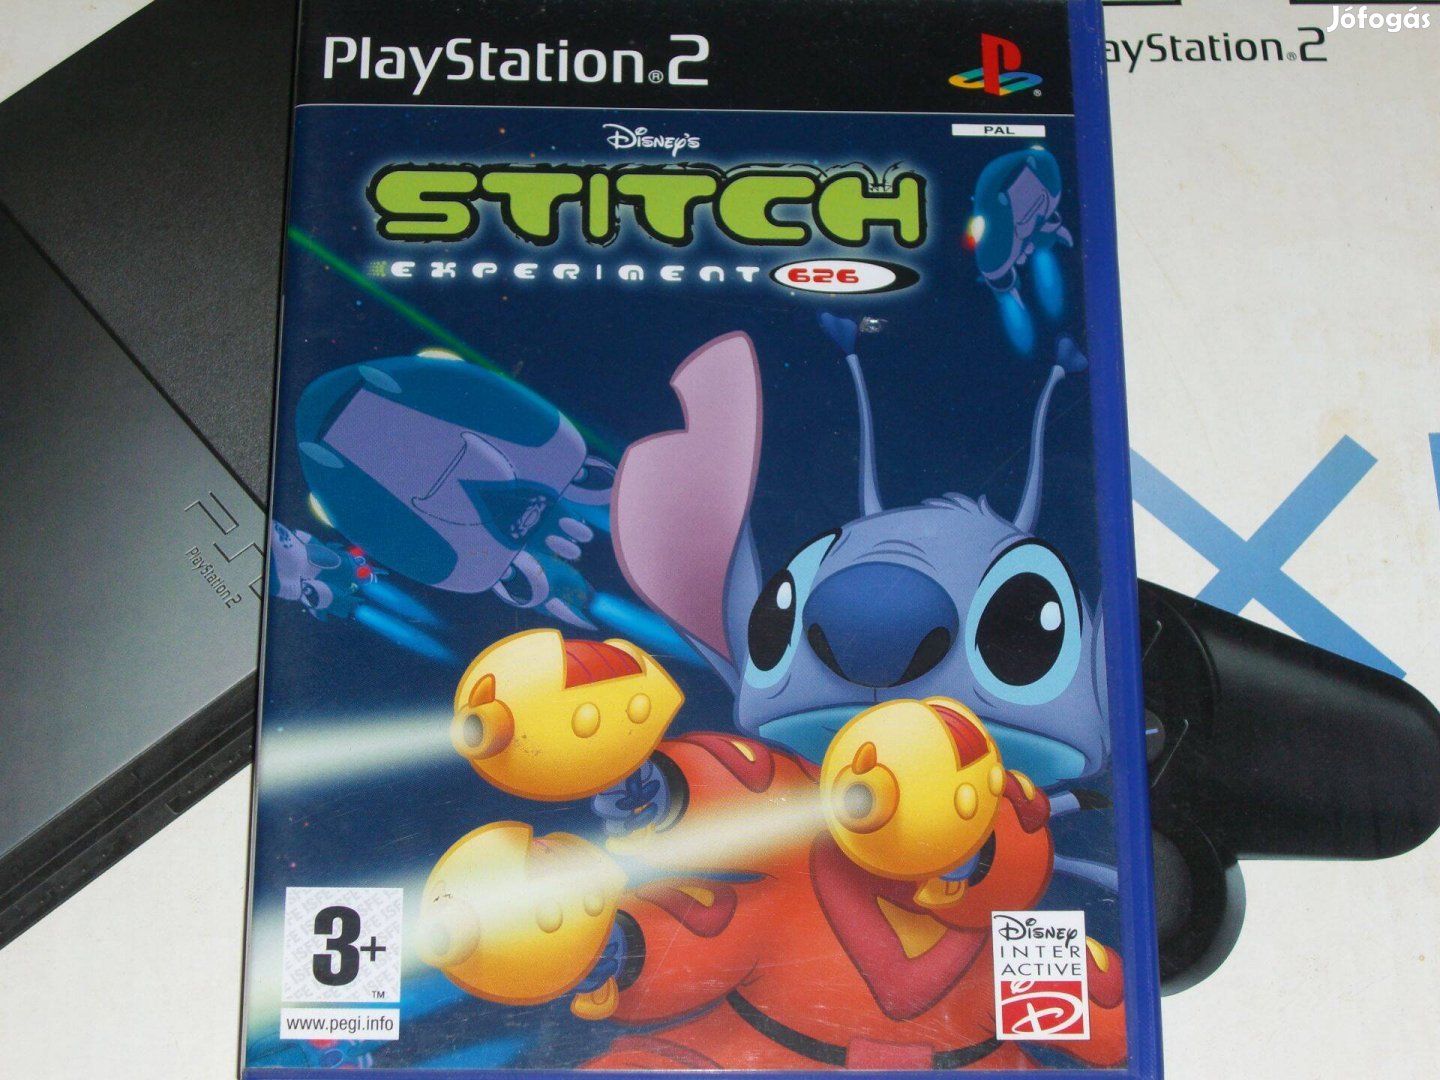 Disney Stitch Experiment 626 Playstation 2 eredeti lemez eladó